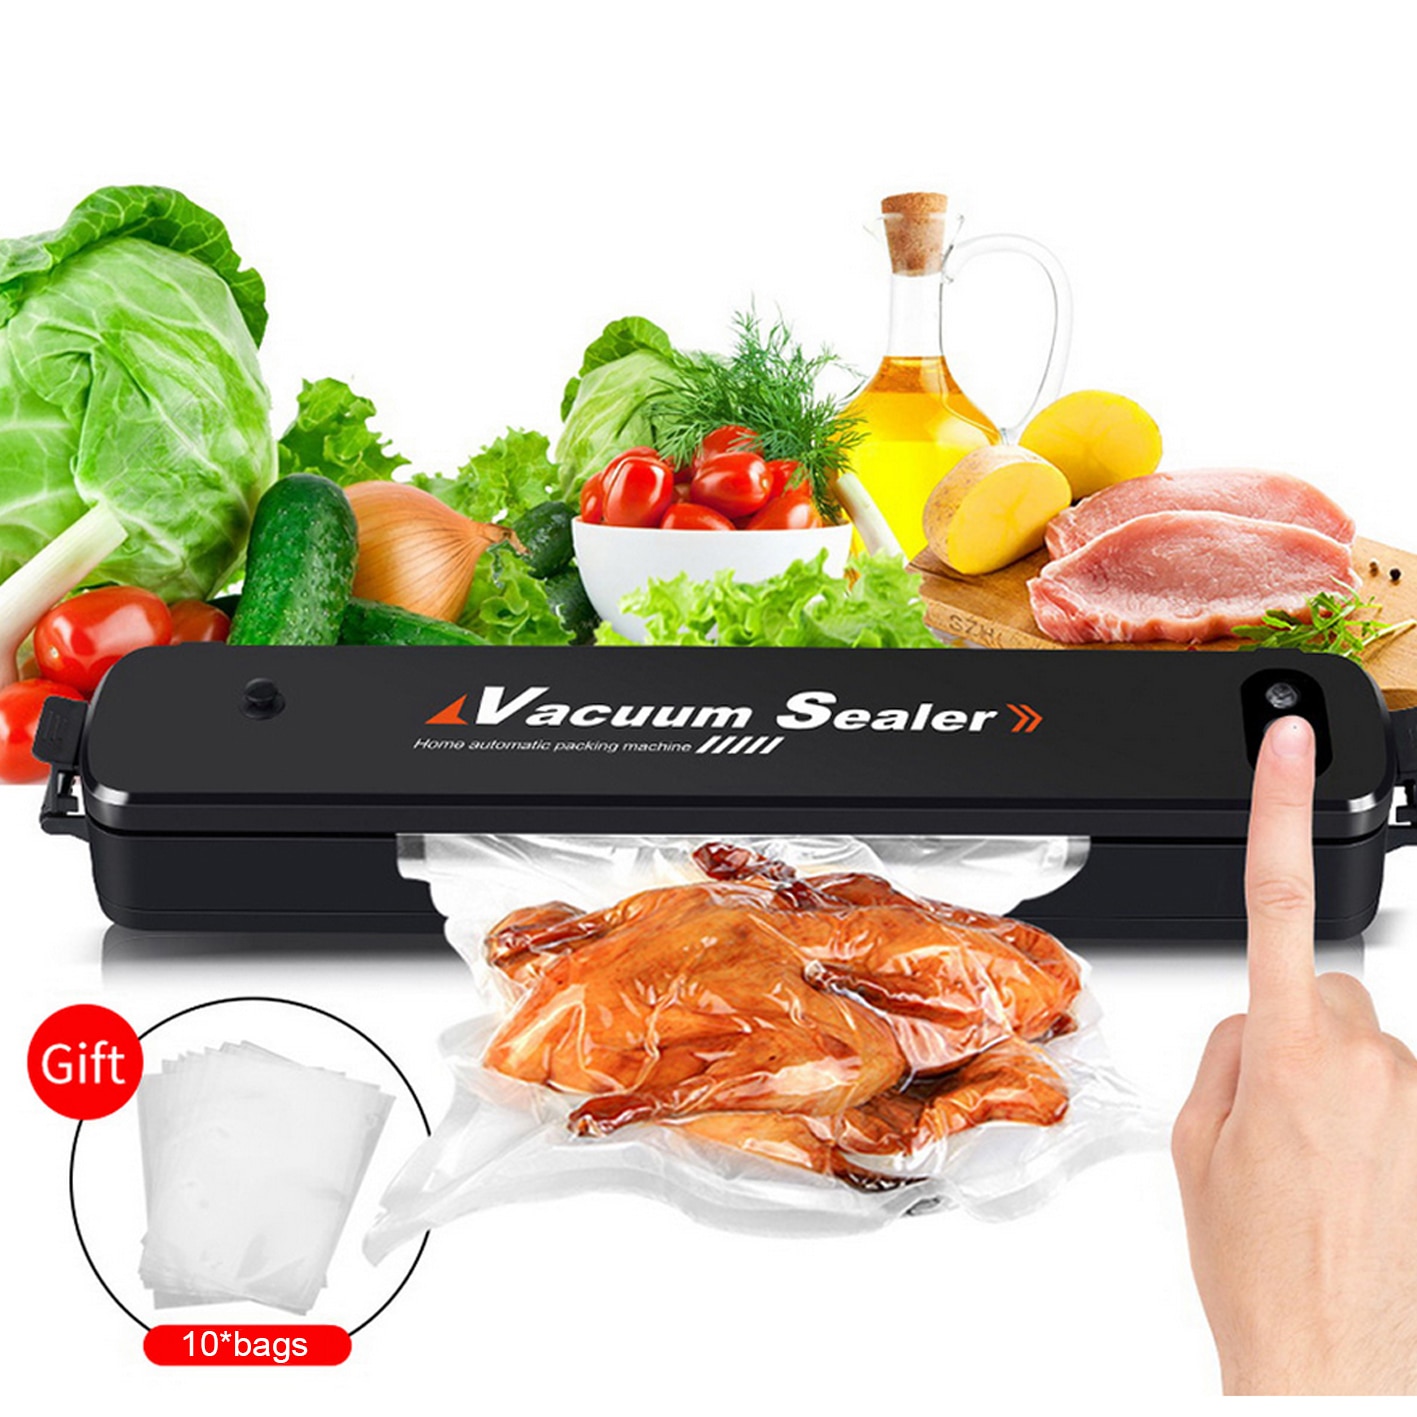 Huis Keuken Beste Food Vacuum Sealer Met 10 Vacuüm Verpakking Zak Sealmachine Huishoudelijke Sluitmachine 220V Eu 110V Us